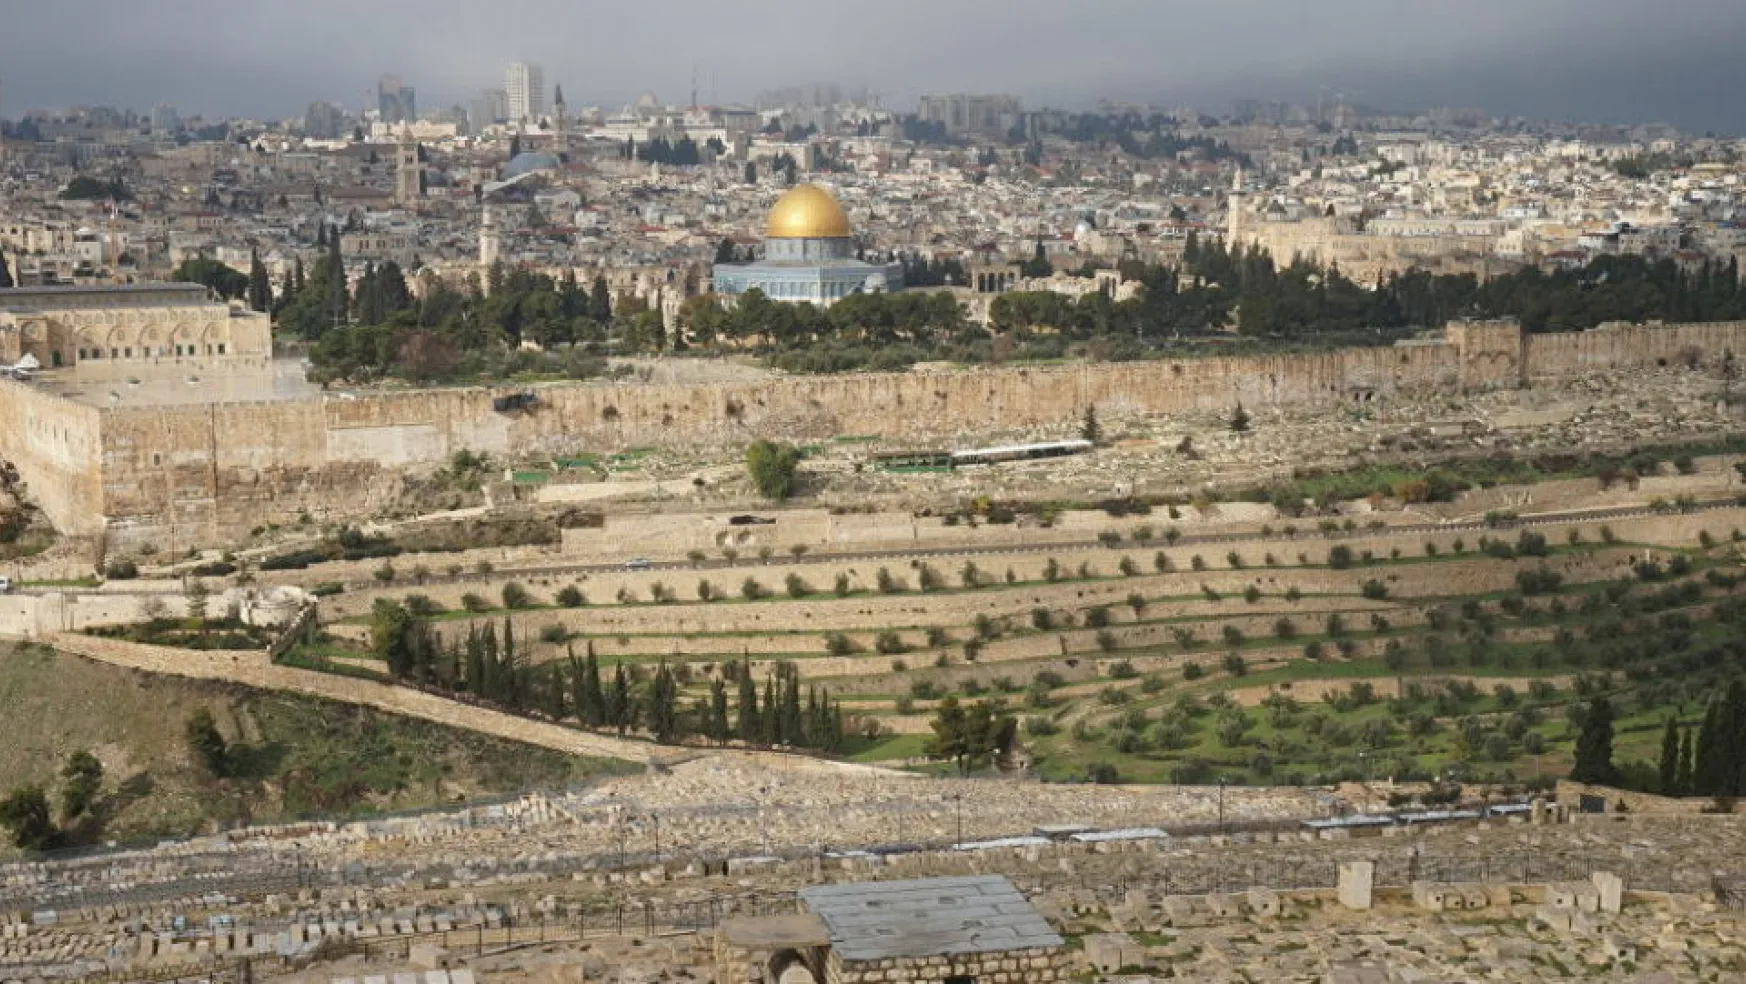 Kudüs'te 2 Bin Yıllık Kayıp Yol Bulundu